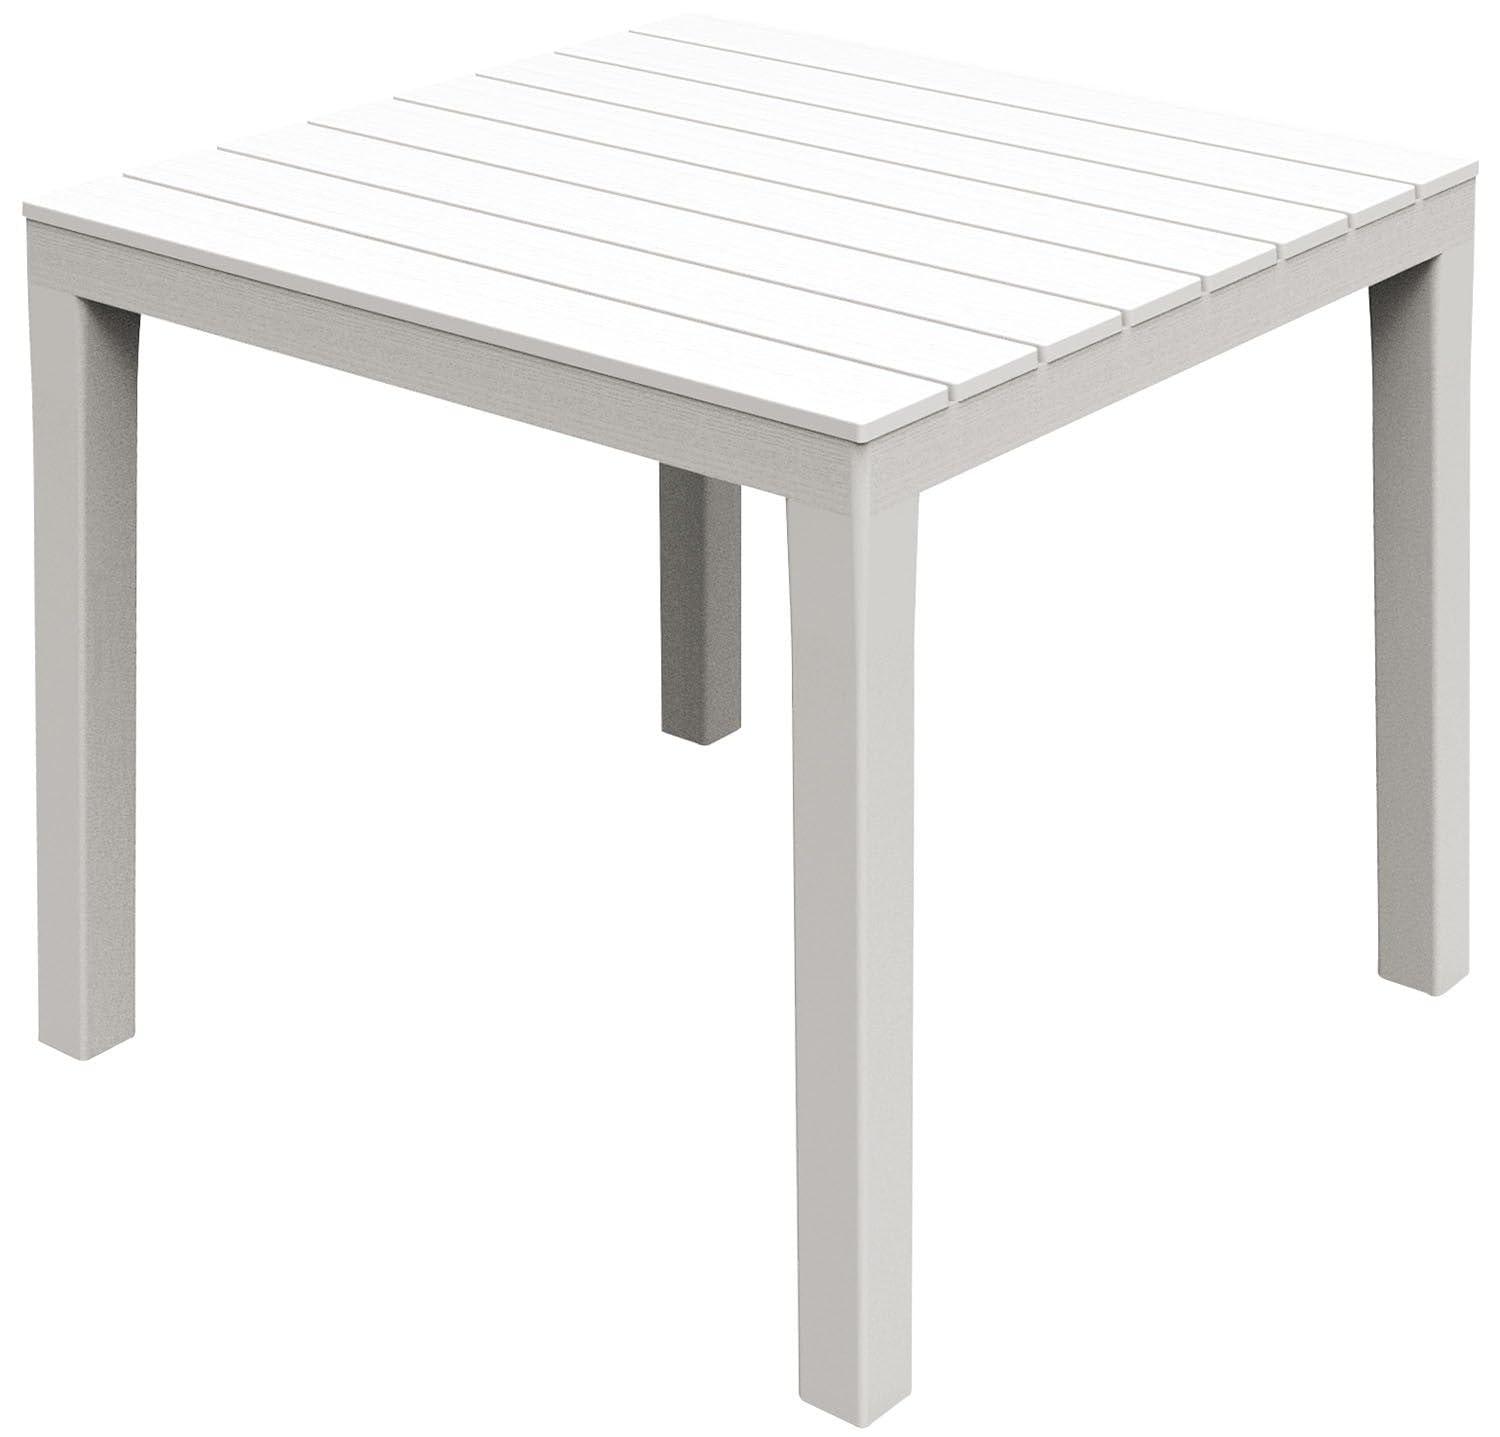 Modularer quadratischer Tisch, Made in Italy, 78 x 78 x 72 cm, Farbe Weiß